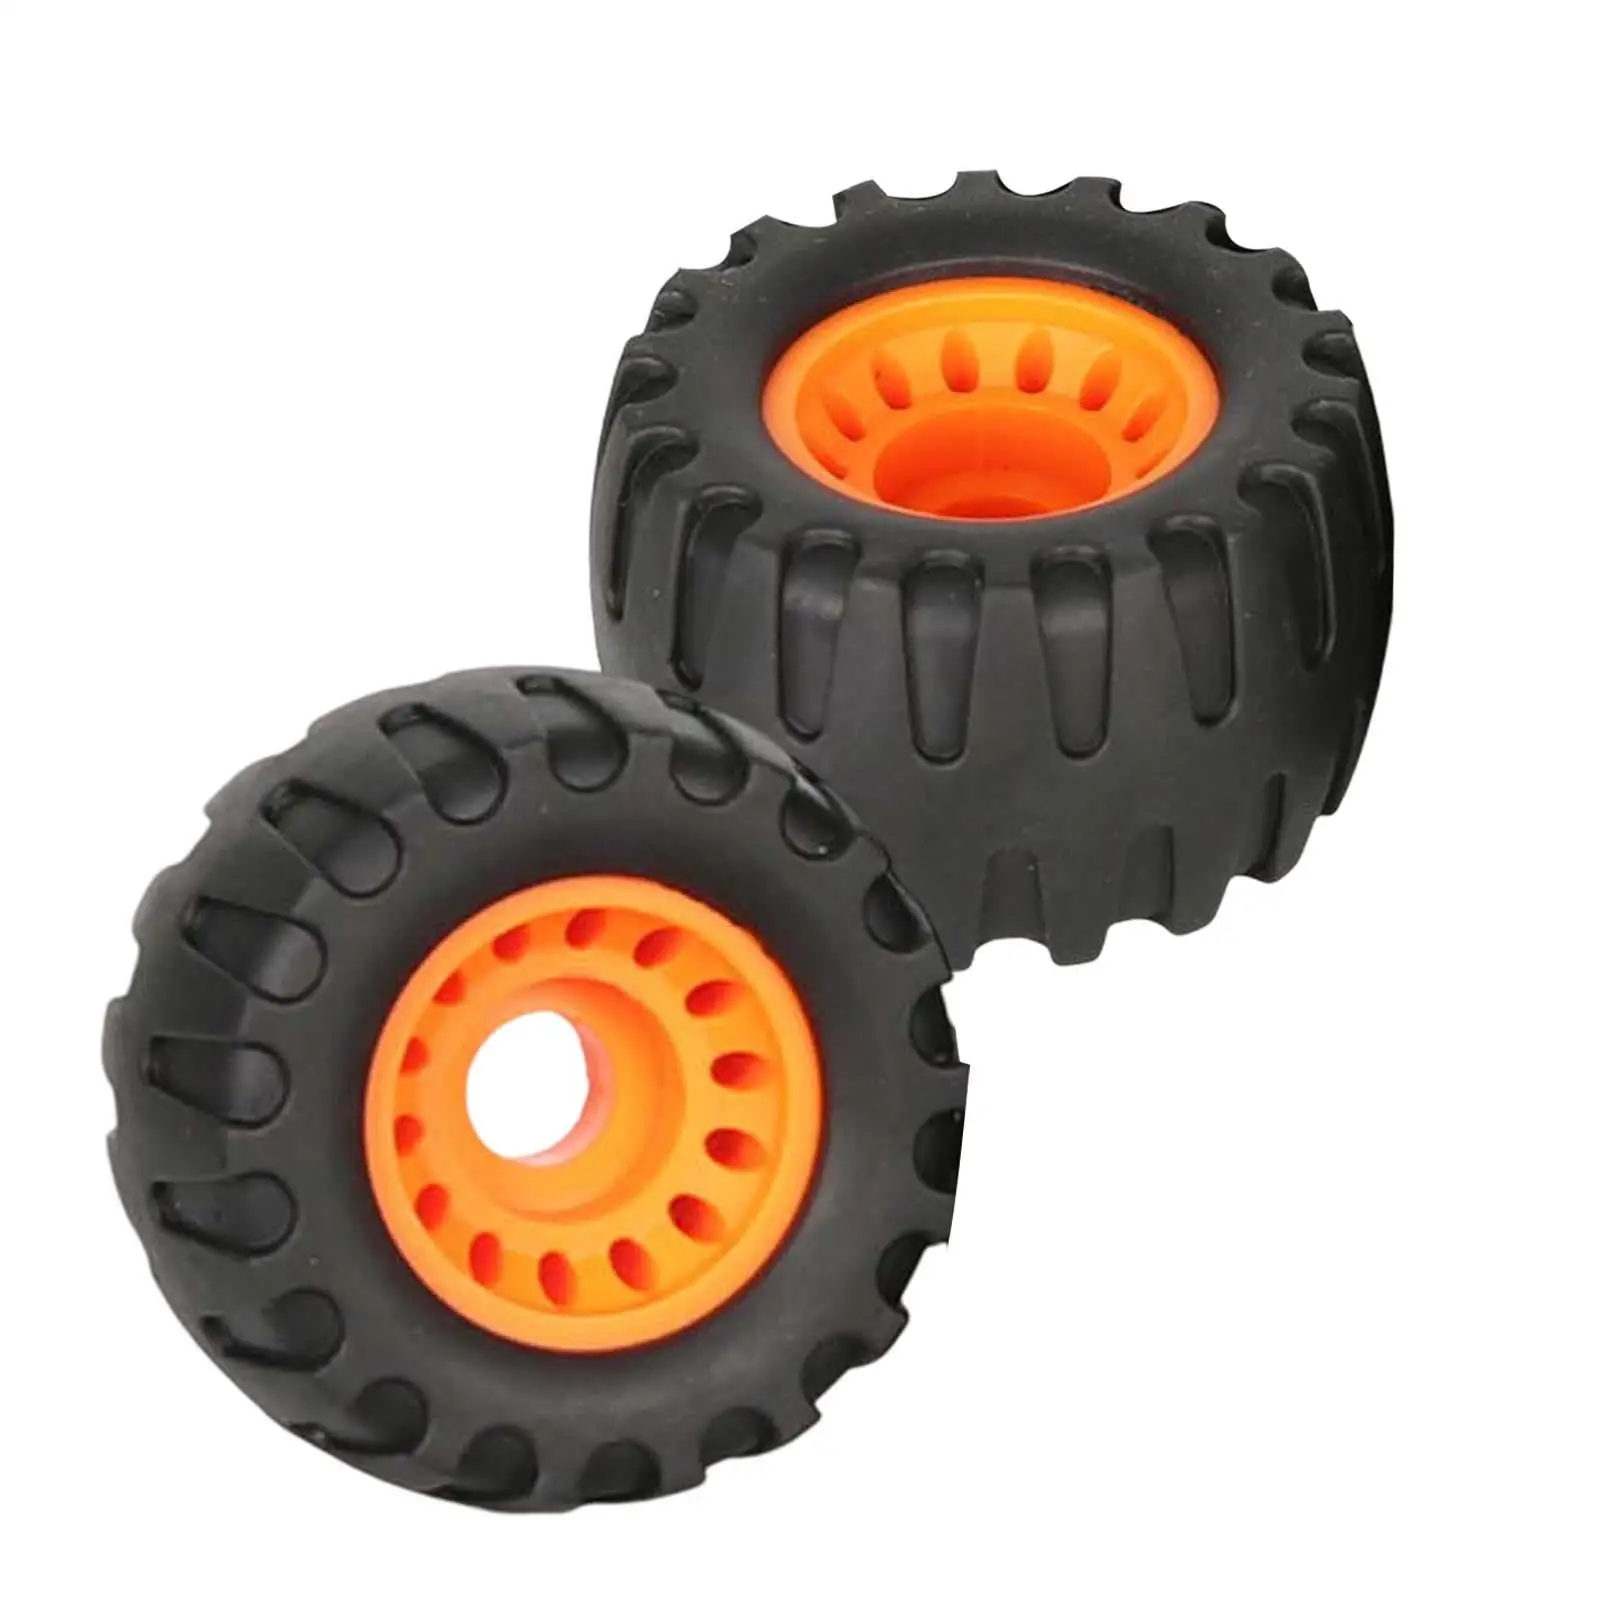 2x Longboard Wheels Repair Maintain Parts Black with Orange Wear Resistant